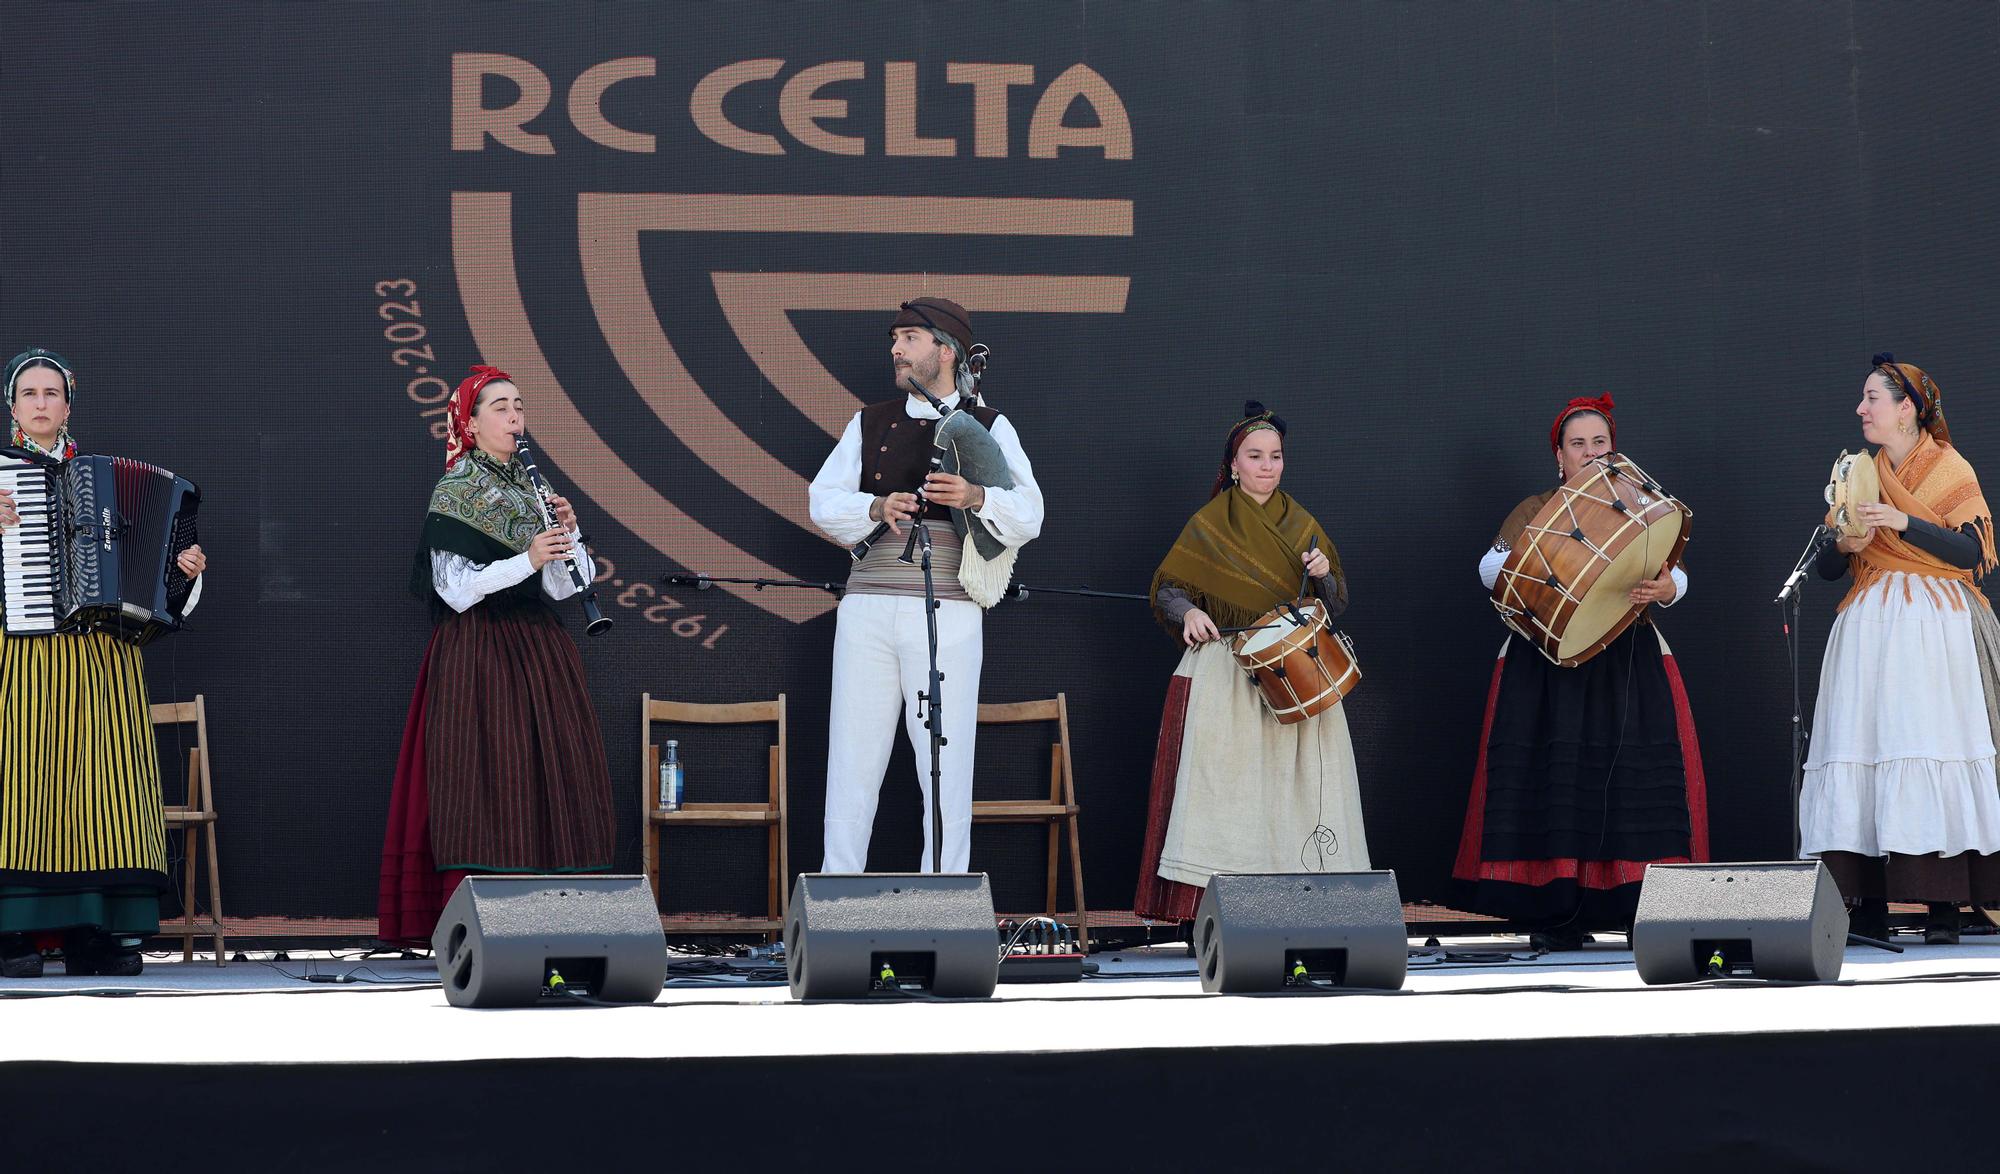 El Celta se rodea de su gran familia y de representantes institucionales por su centenario